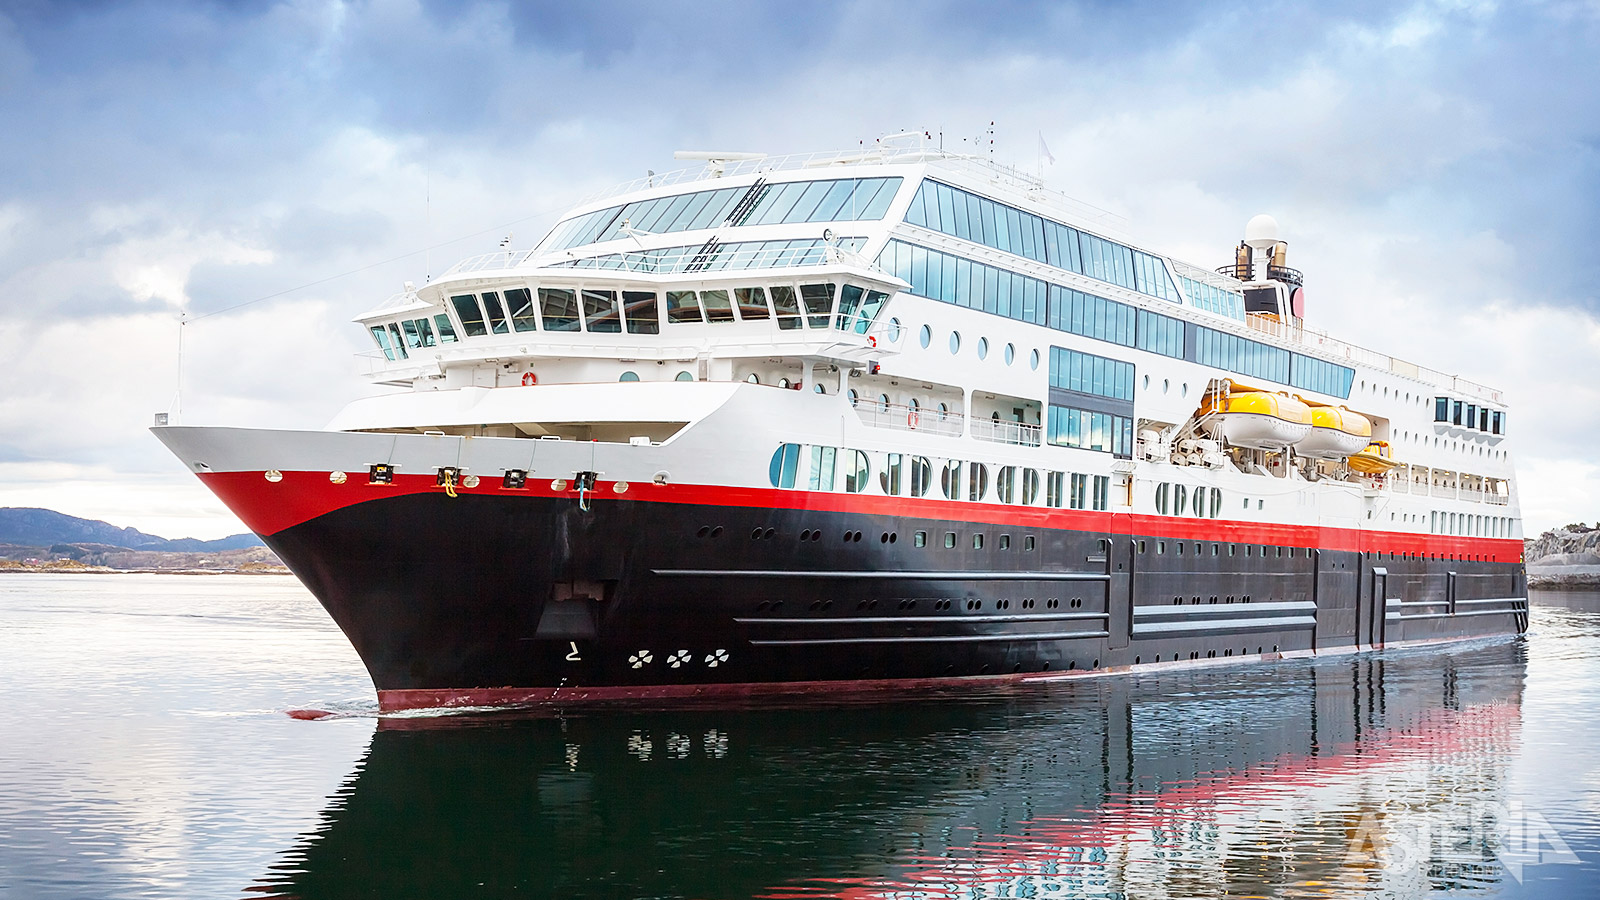 De Hurtigruten-schepen varen al meer dan 125 jaar langs één van de mooiste kustlijnen ter wereld